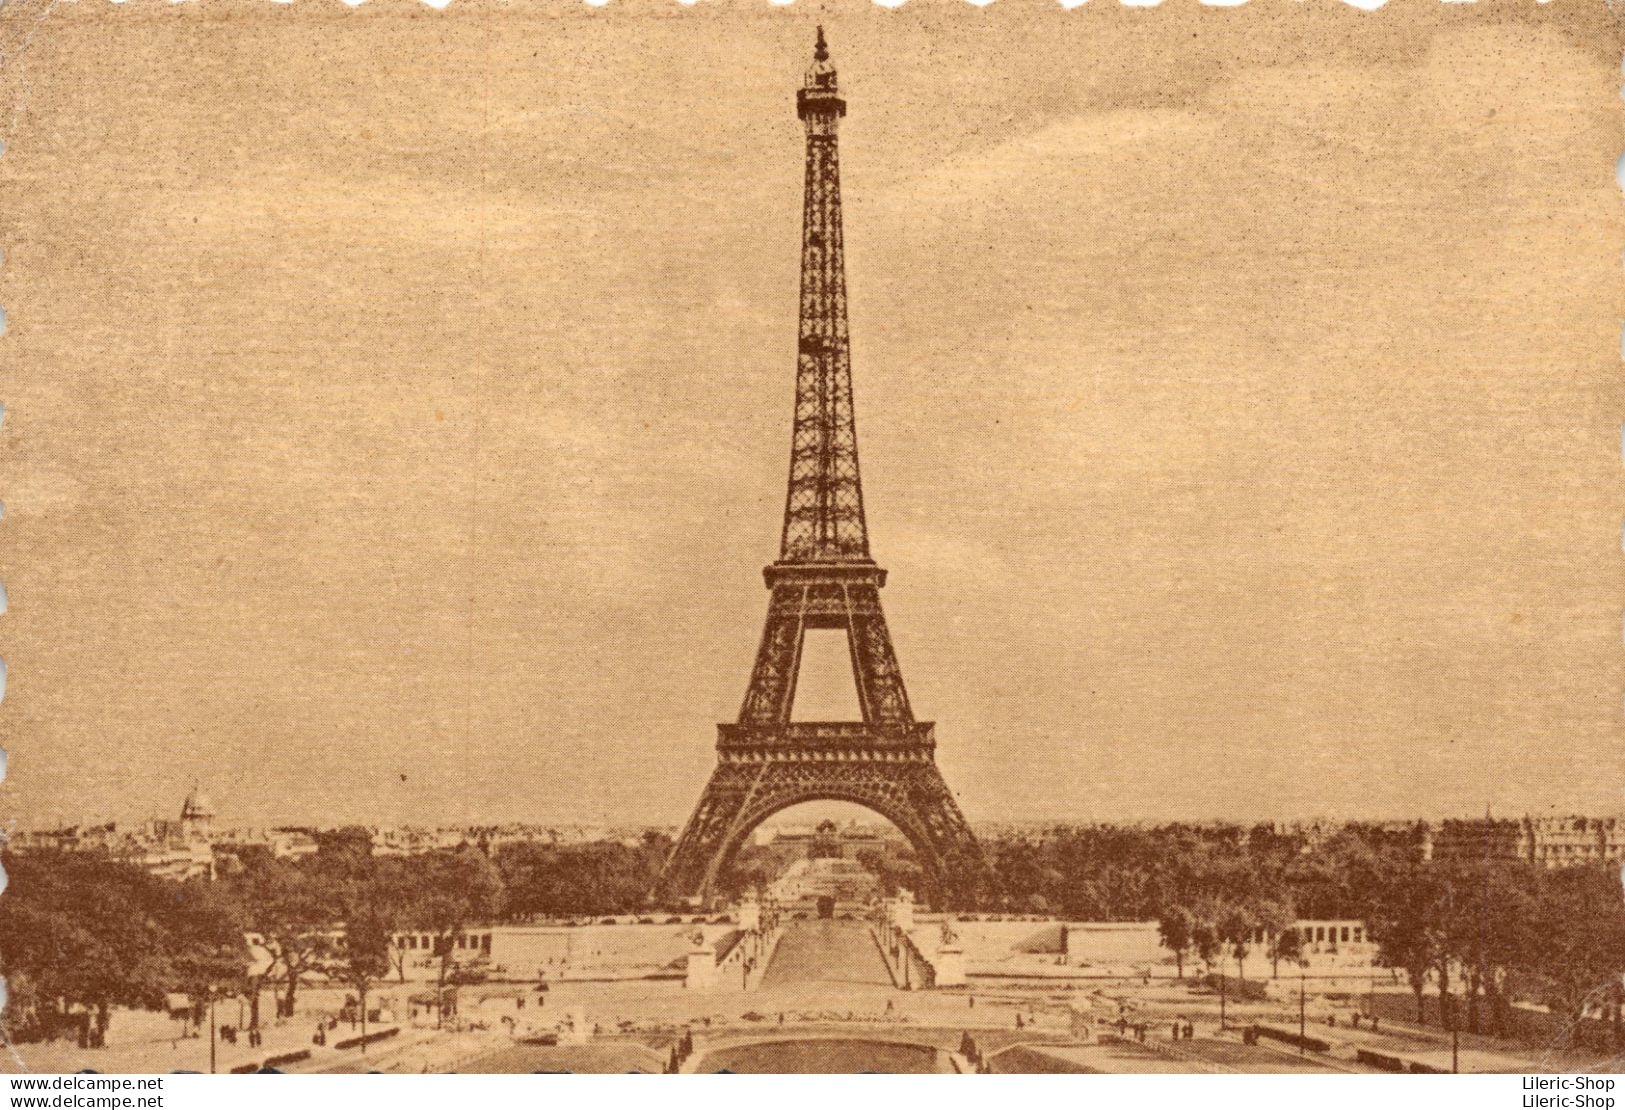 DAS SCHOEHNE PARIS - LES JARDINS DU TROCADÉRO  ET LA TOUR EIFFEL  1945 - Eiffelturm